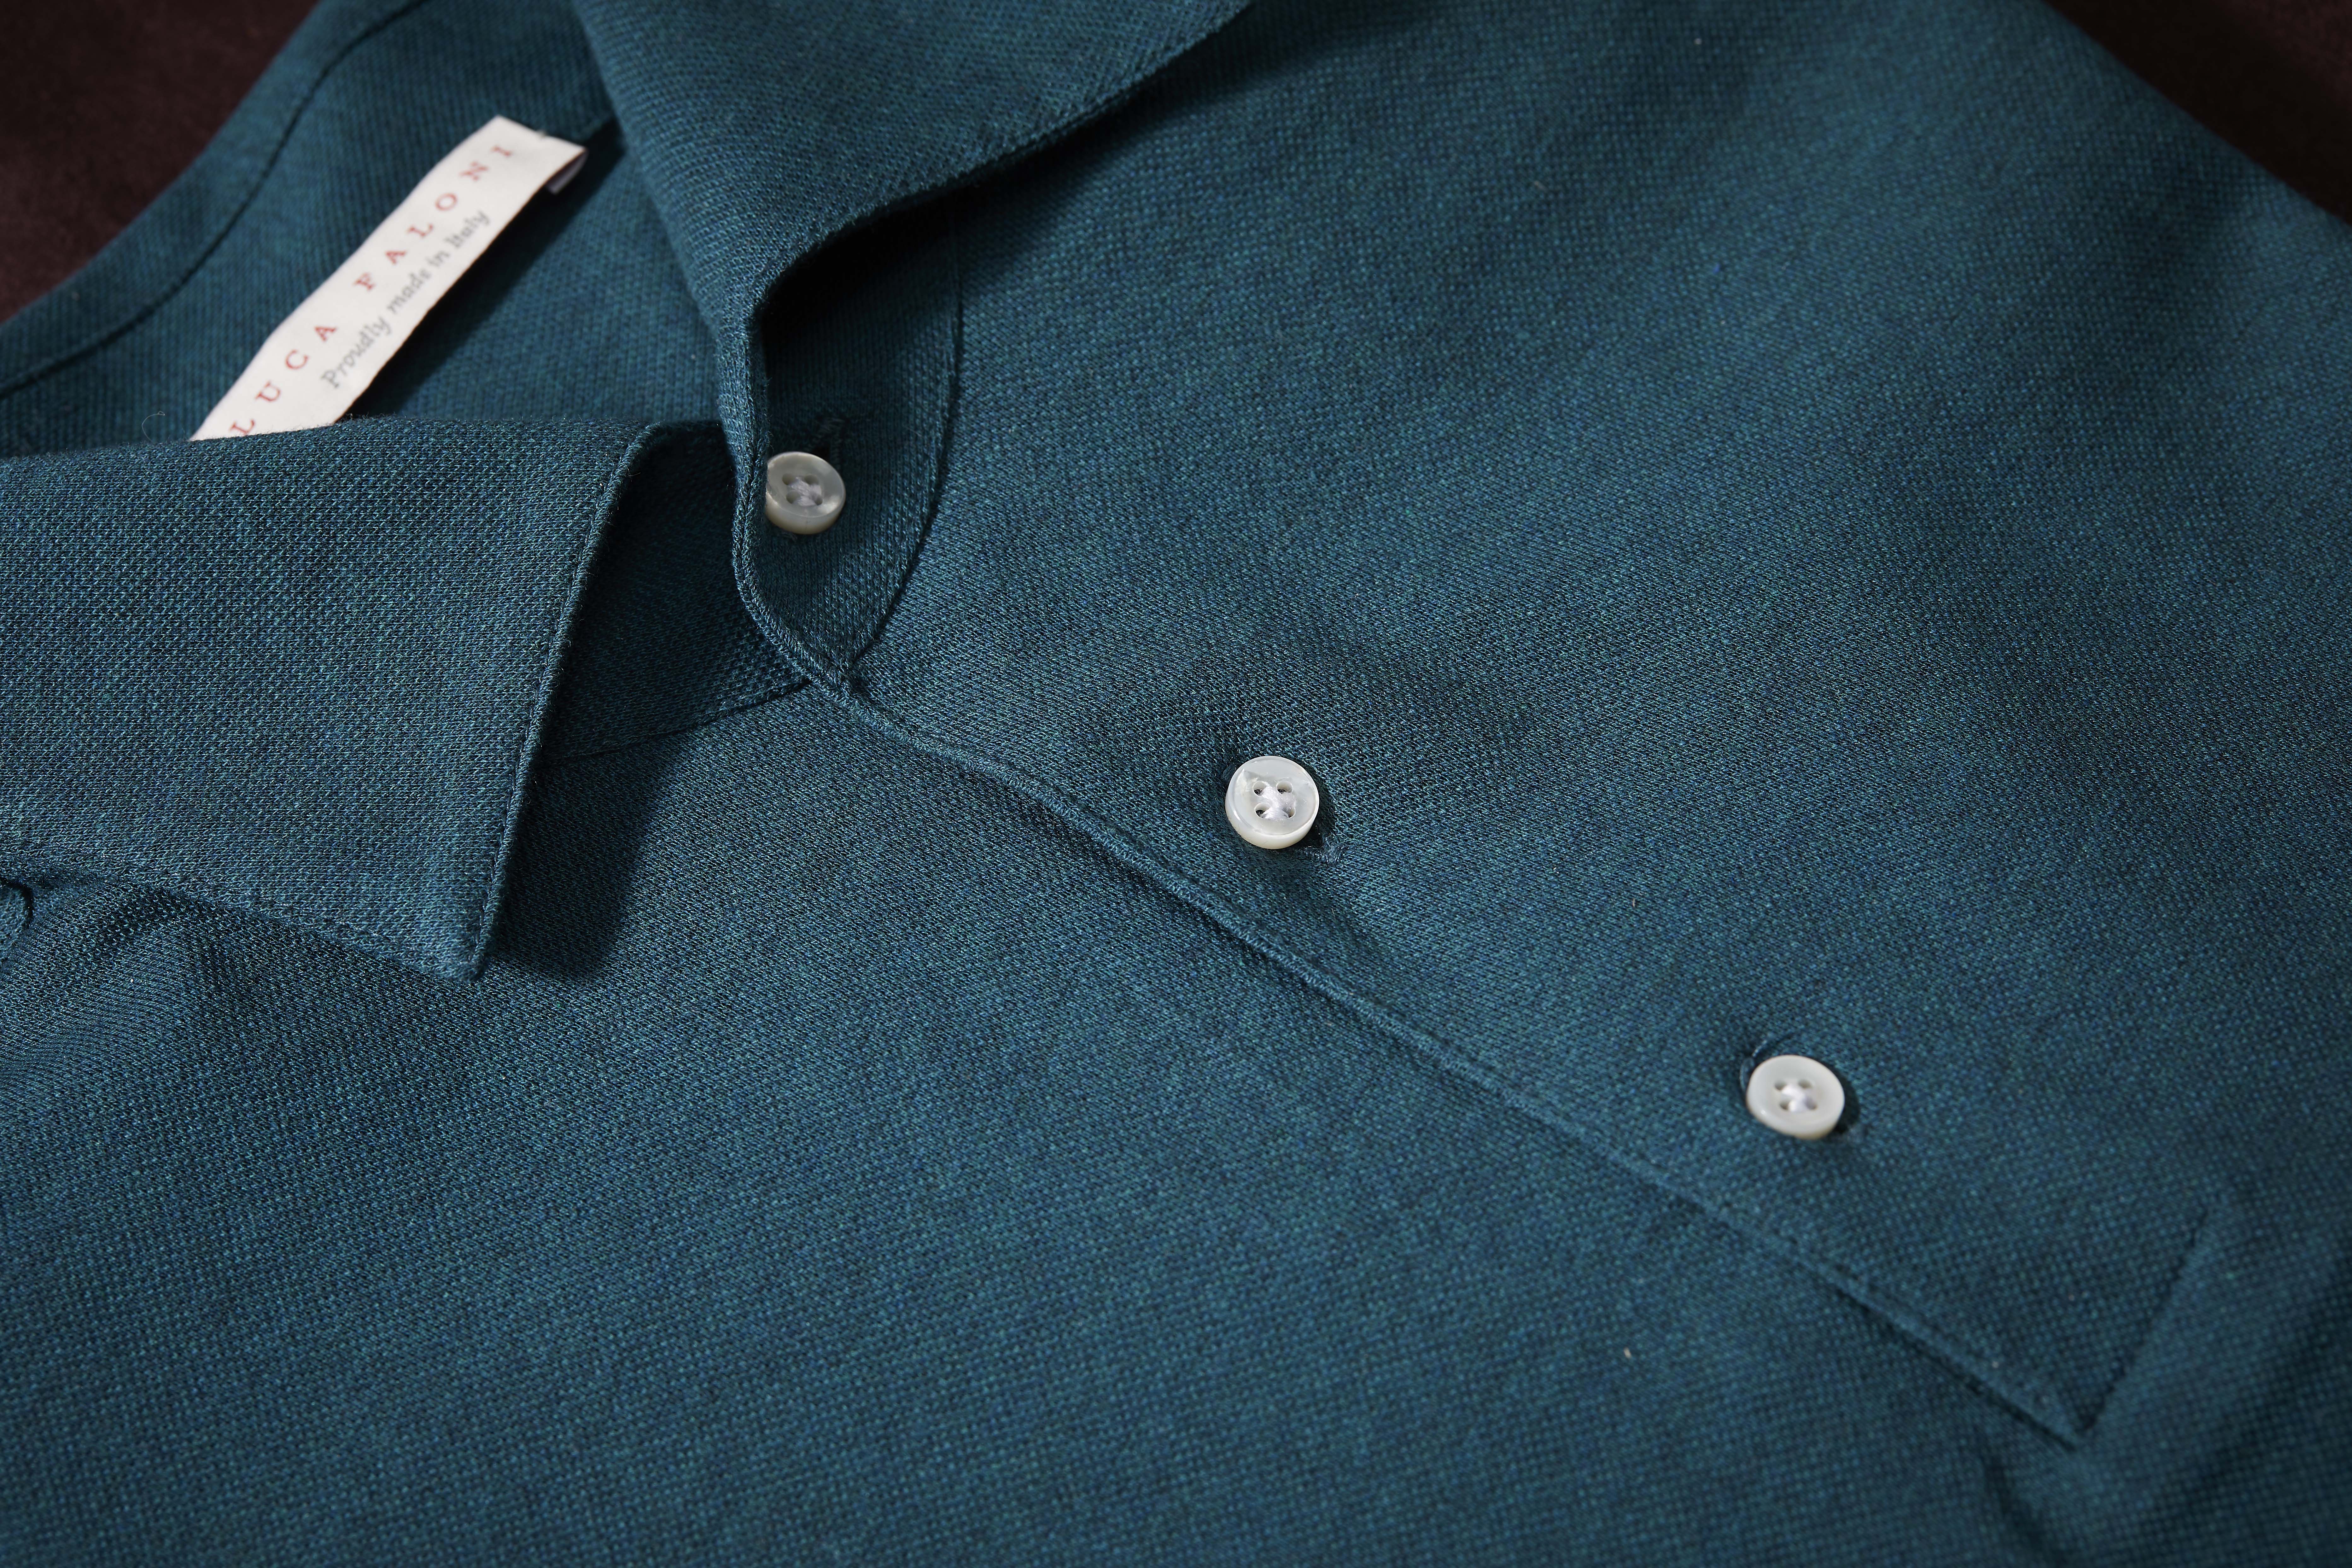 The Polo Shirt Etiquette - The Fleece Milano Journal